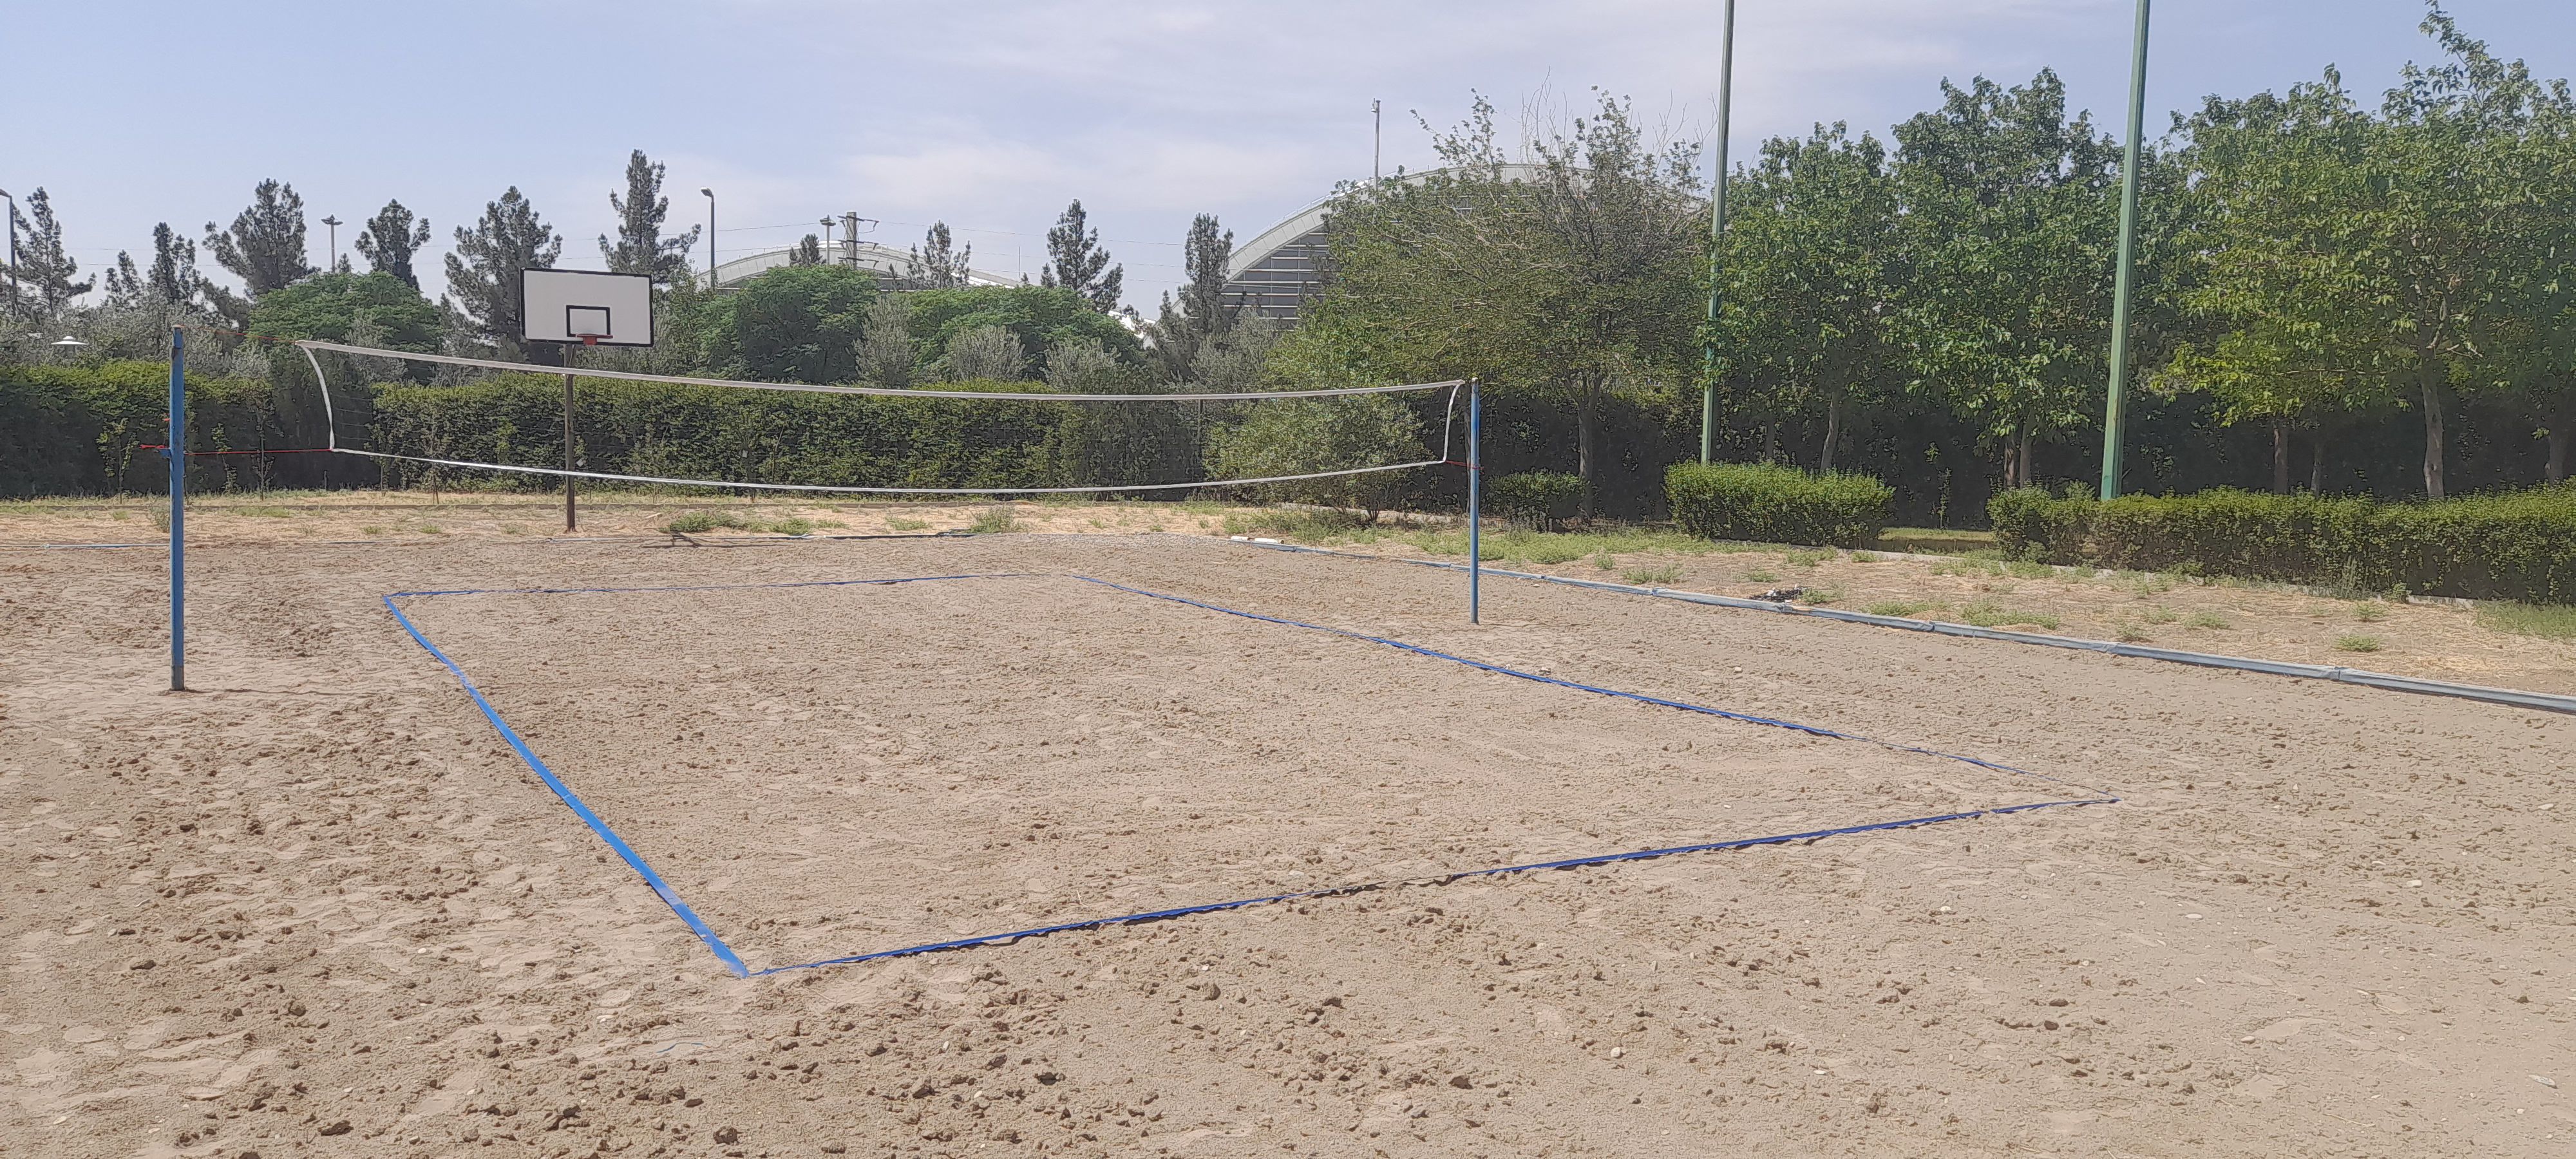 باشگاه زمین والیبال ساحلی دختران دانشگاه شاهد در ستاو